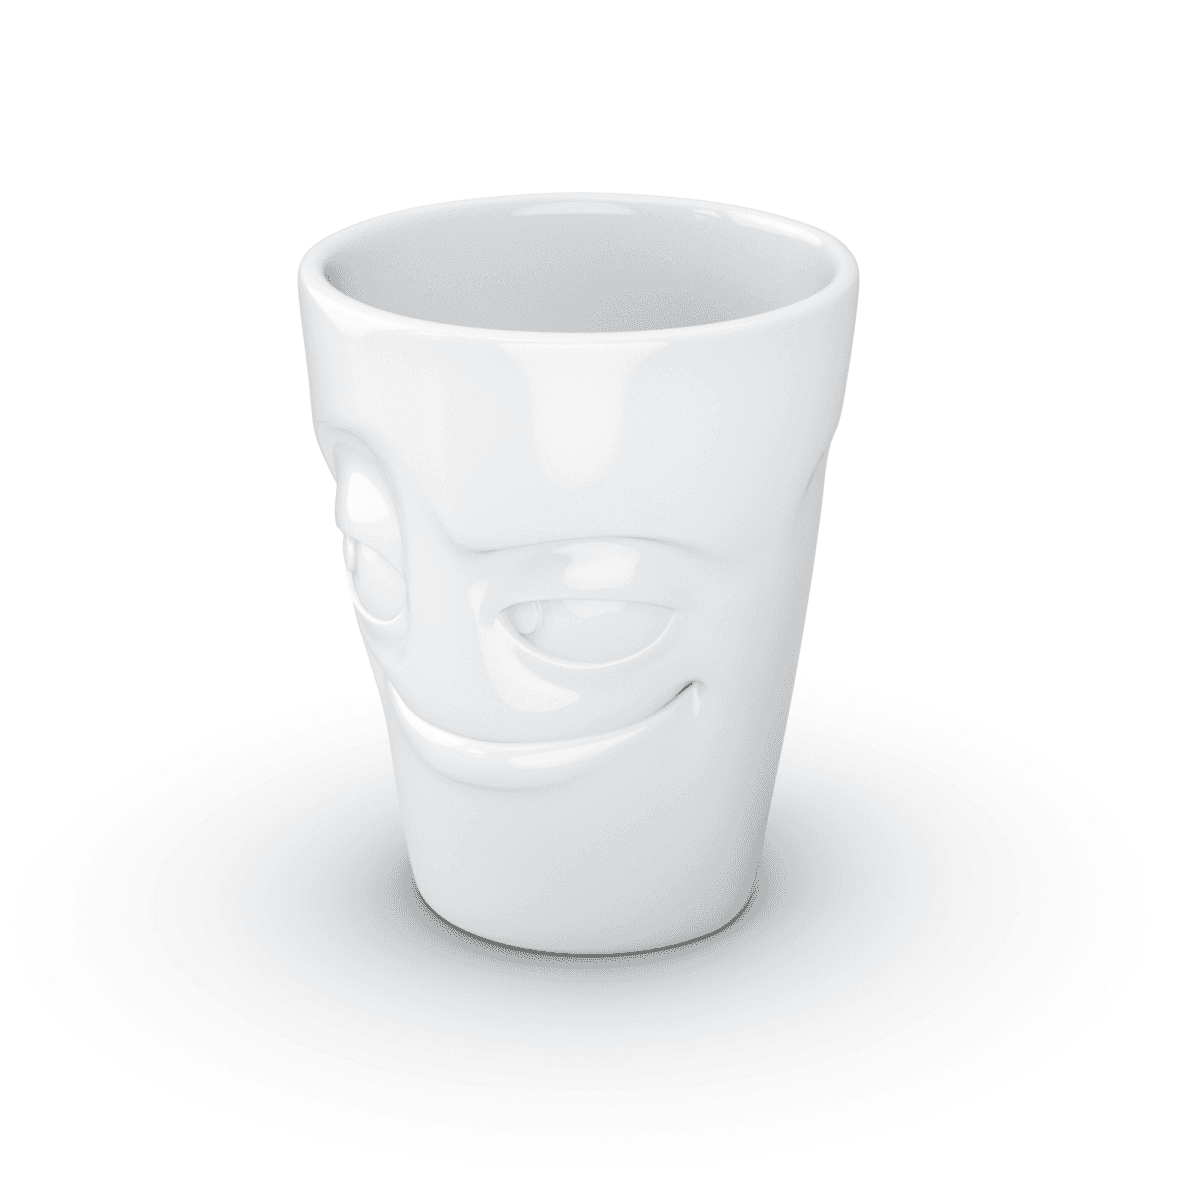 Immagine del prodotto Mug Birichino 3D in Porcellana 350 ml con Manico | TASSEN By Fiftyeight Products